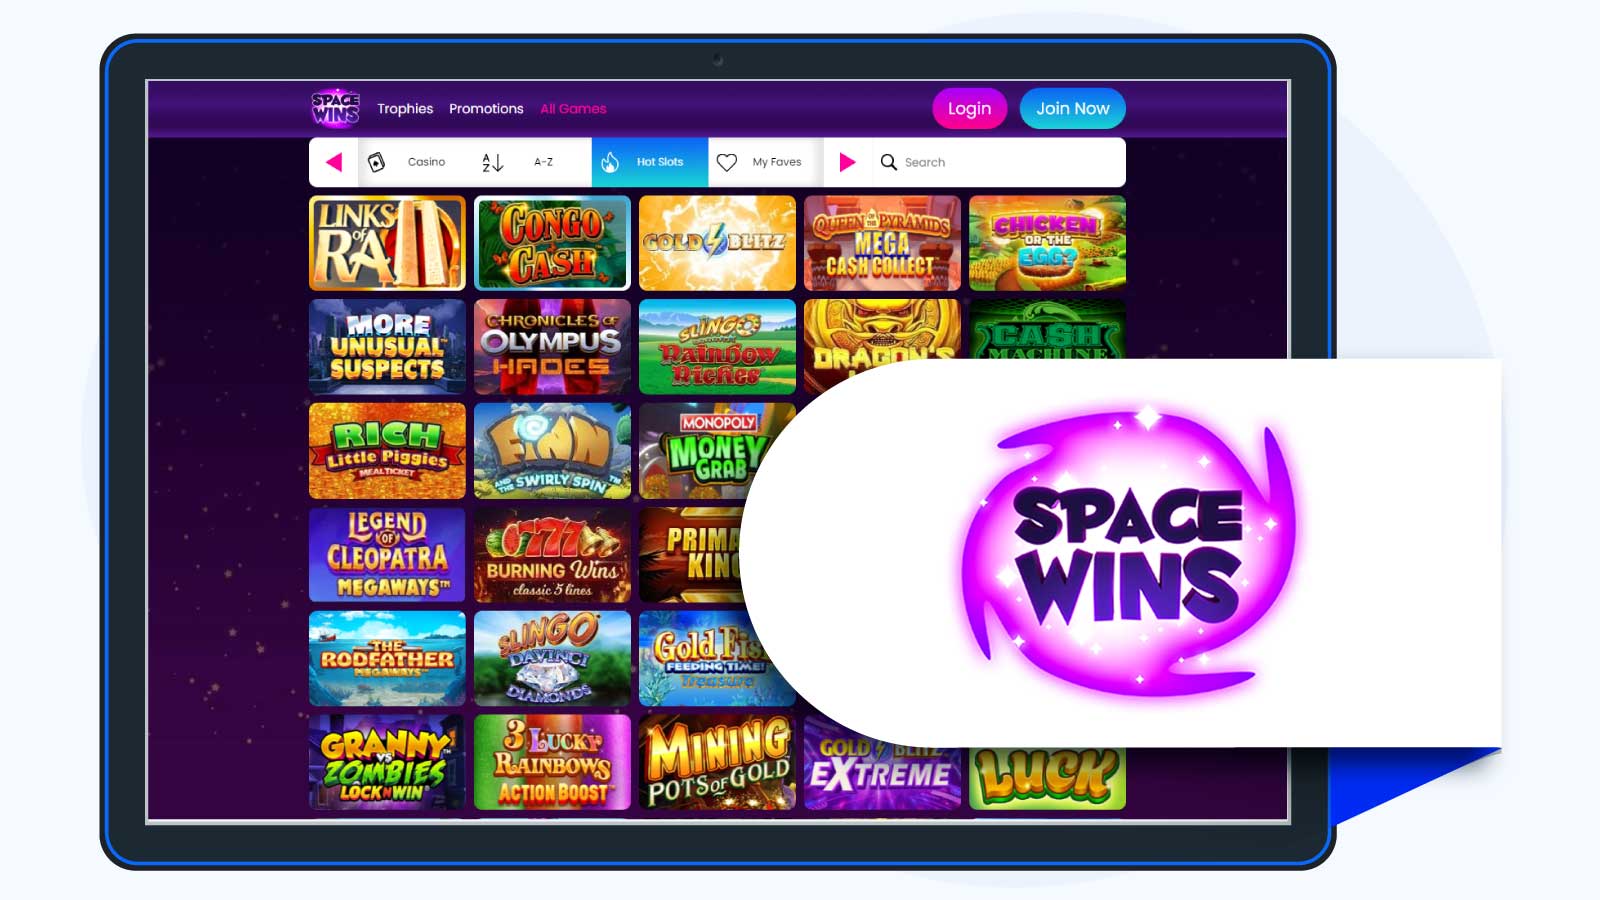 5 Starburst Free Spins No Deposit UK Bonus at Space Wins Casino